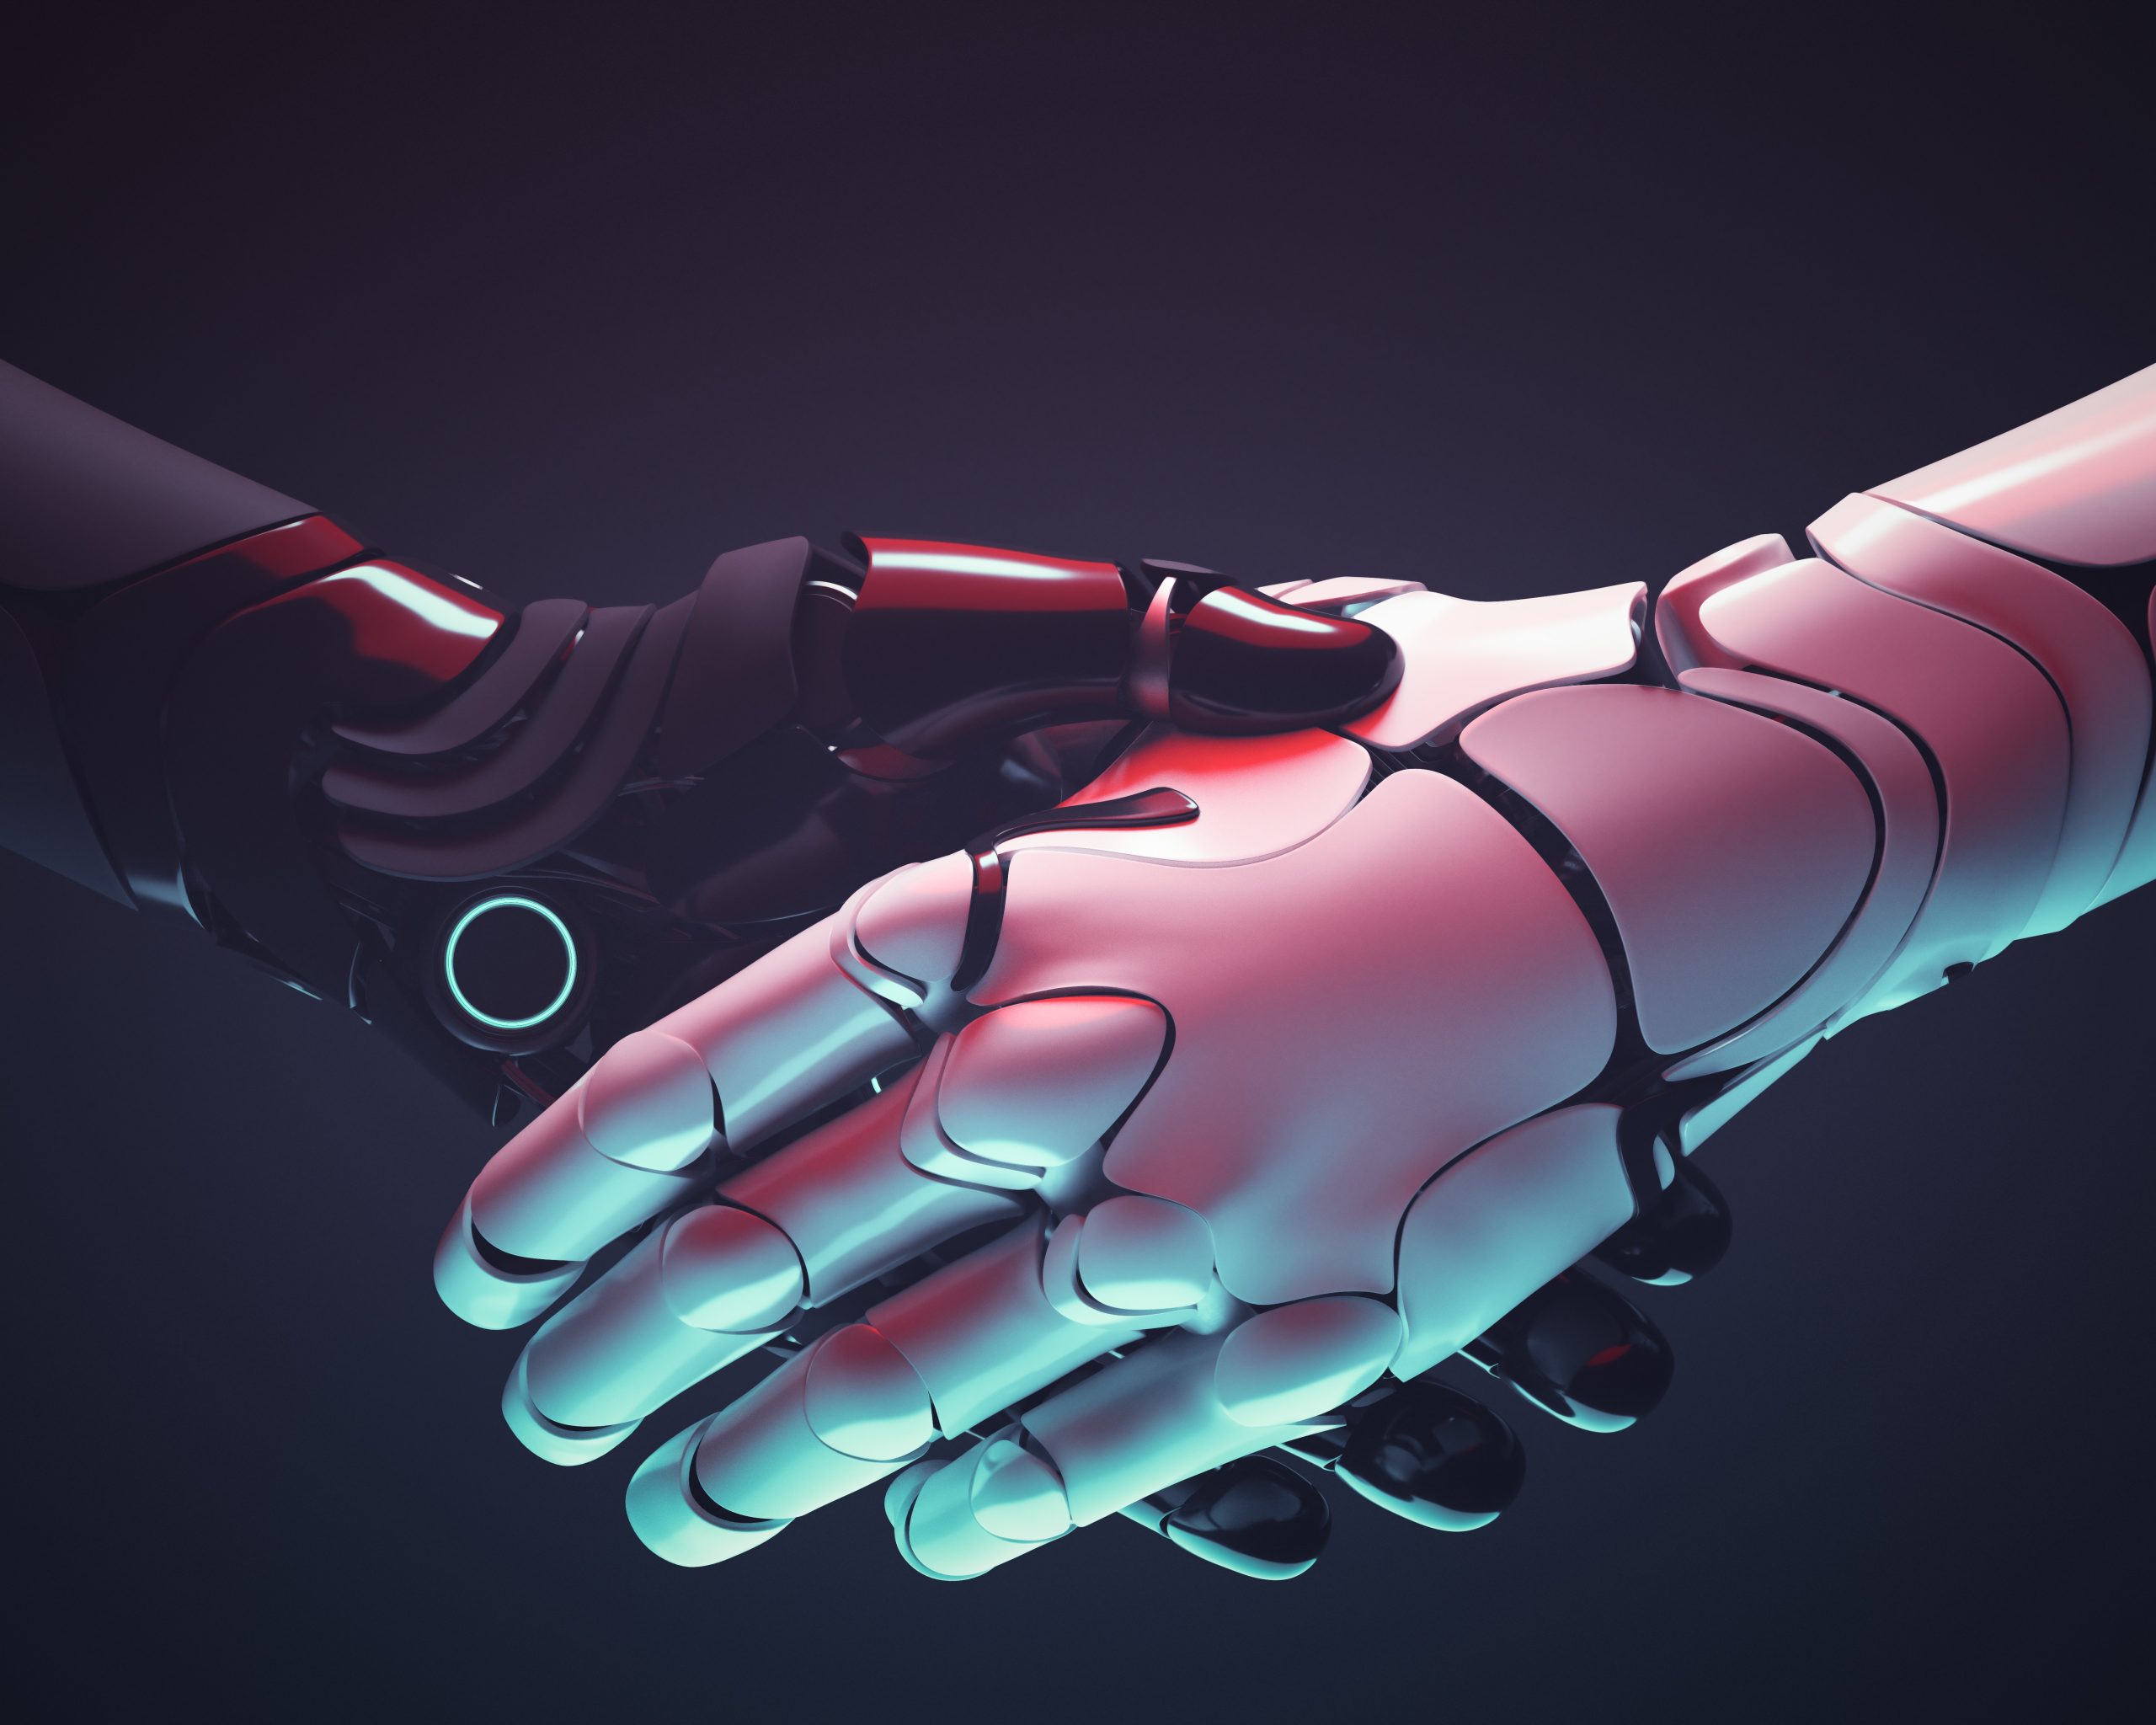 robots handshake robotic hands gesture 2022 12 16 11 05 40 utc 1 scaled